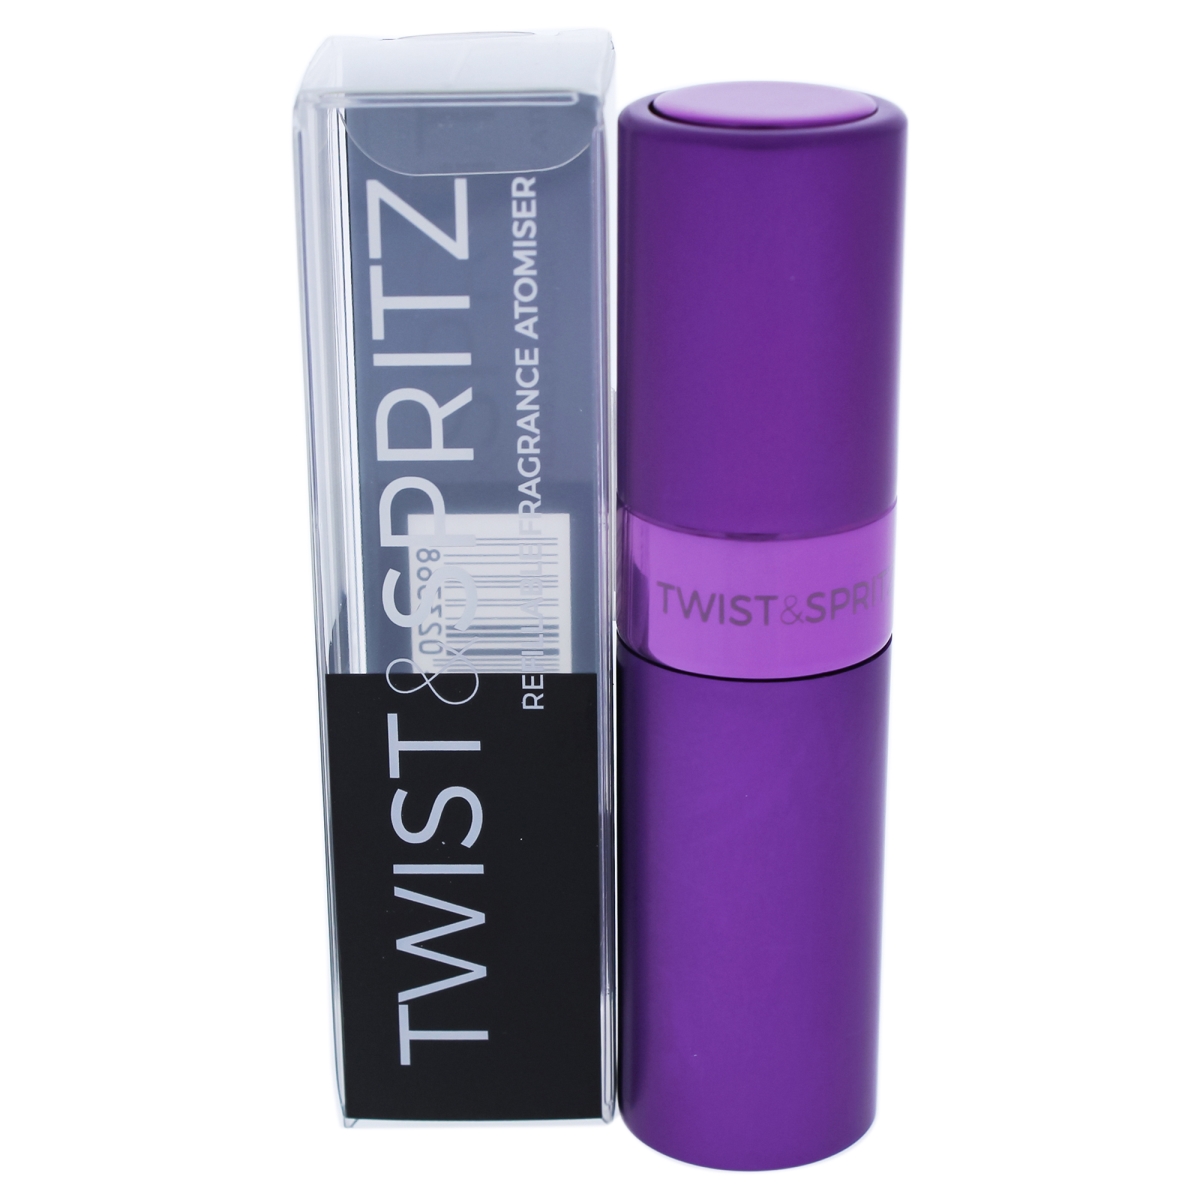 I0091005 Atomiser Refillable Spray For Women - Purple - 8 Ml